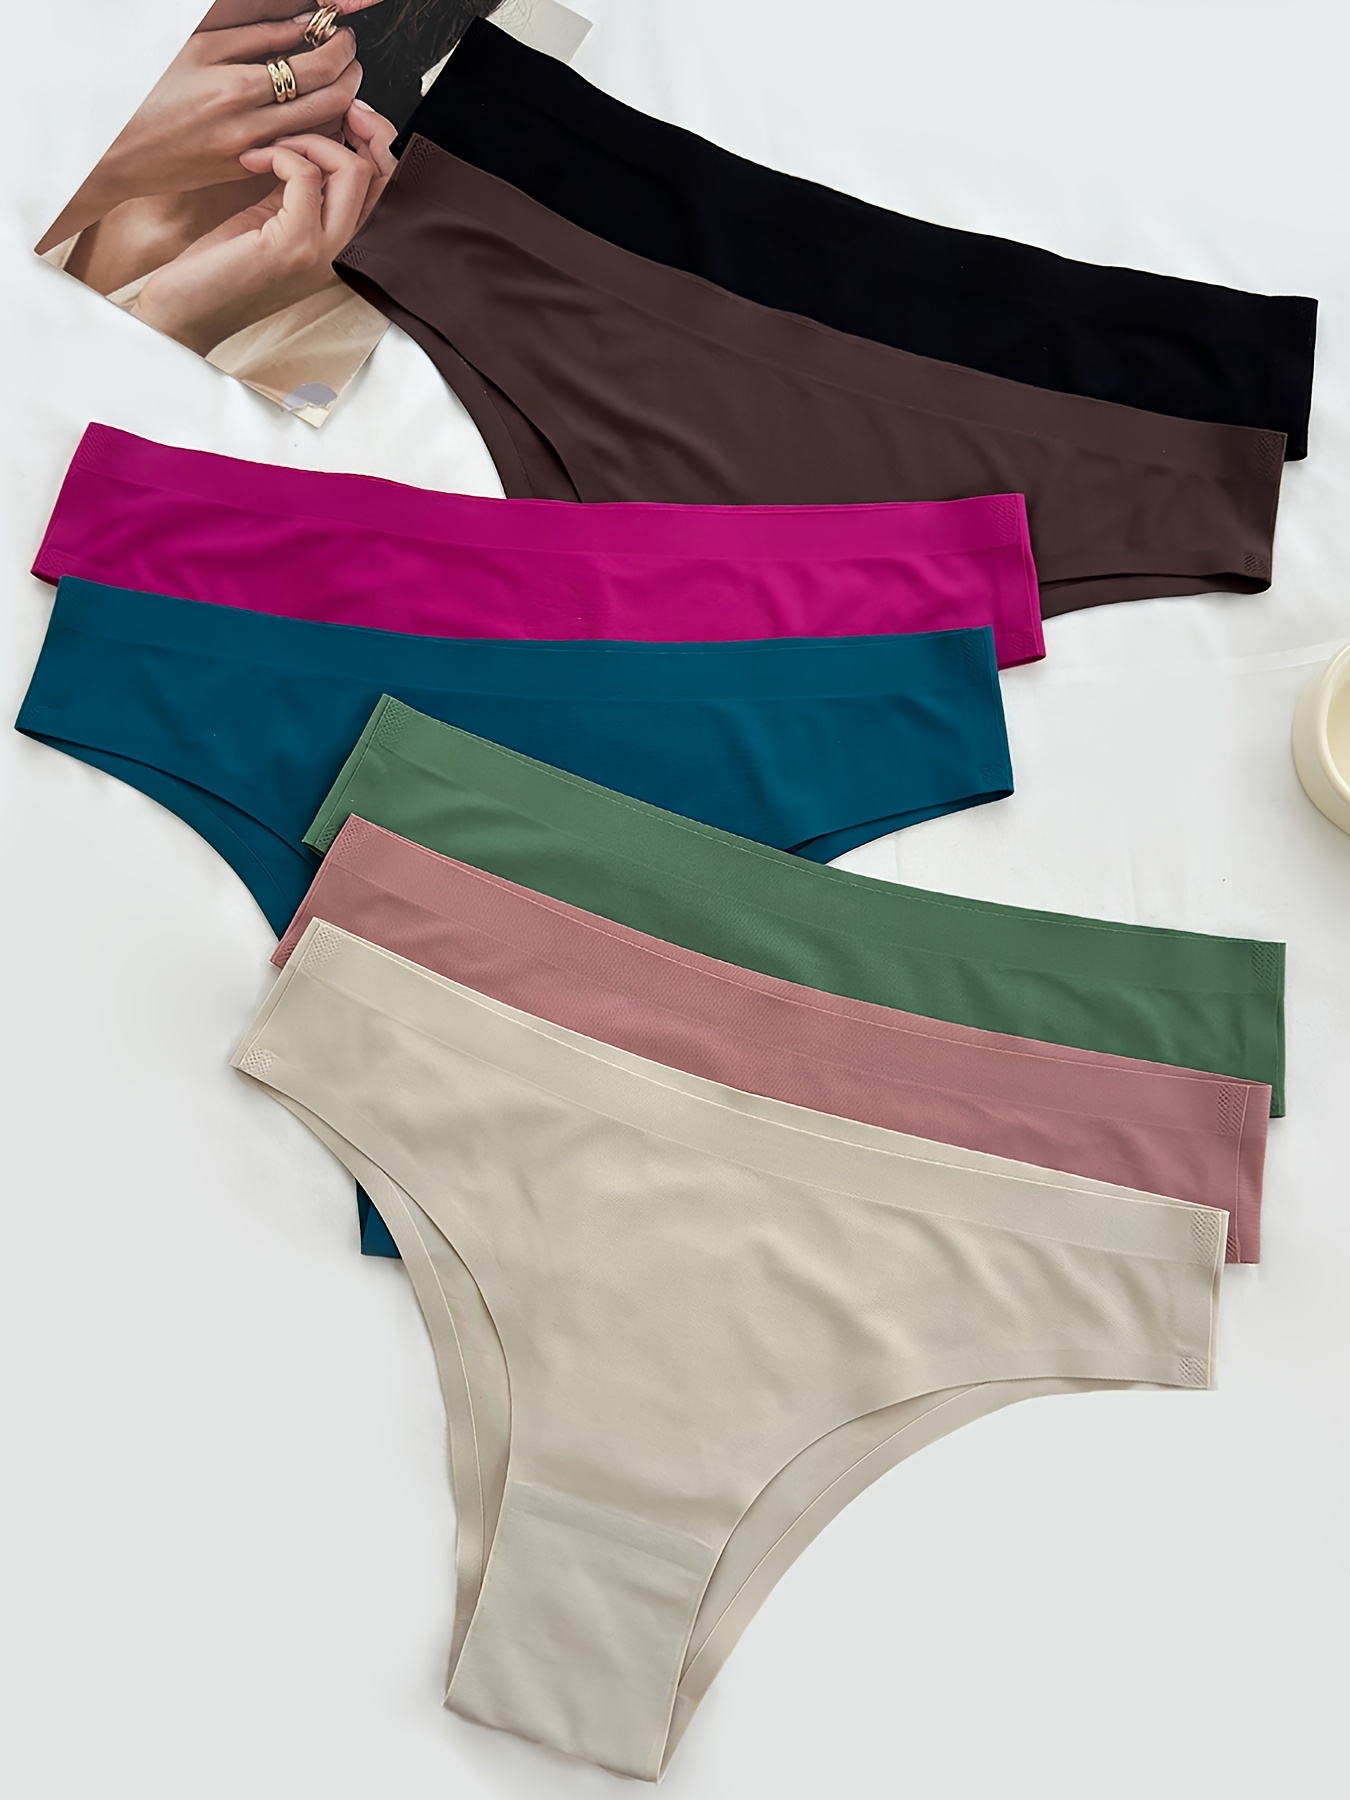 Women's Nylon Seamless Full Brief Panties